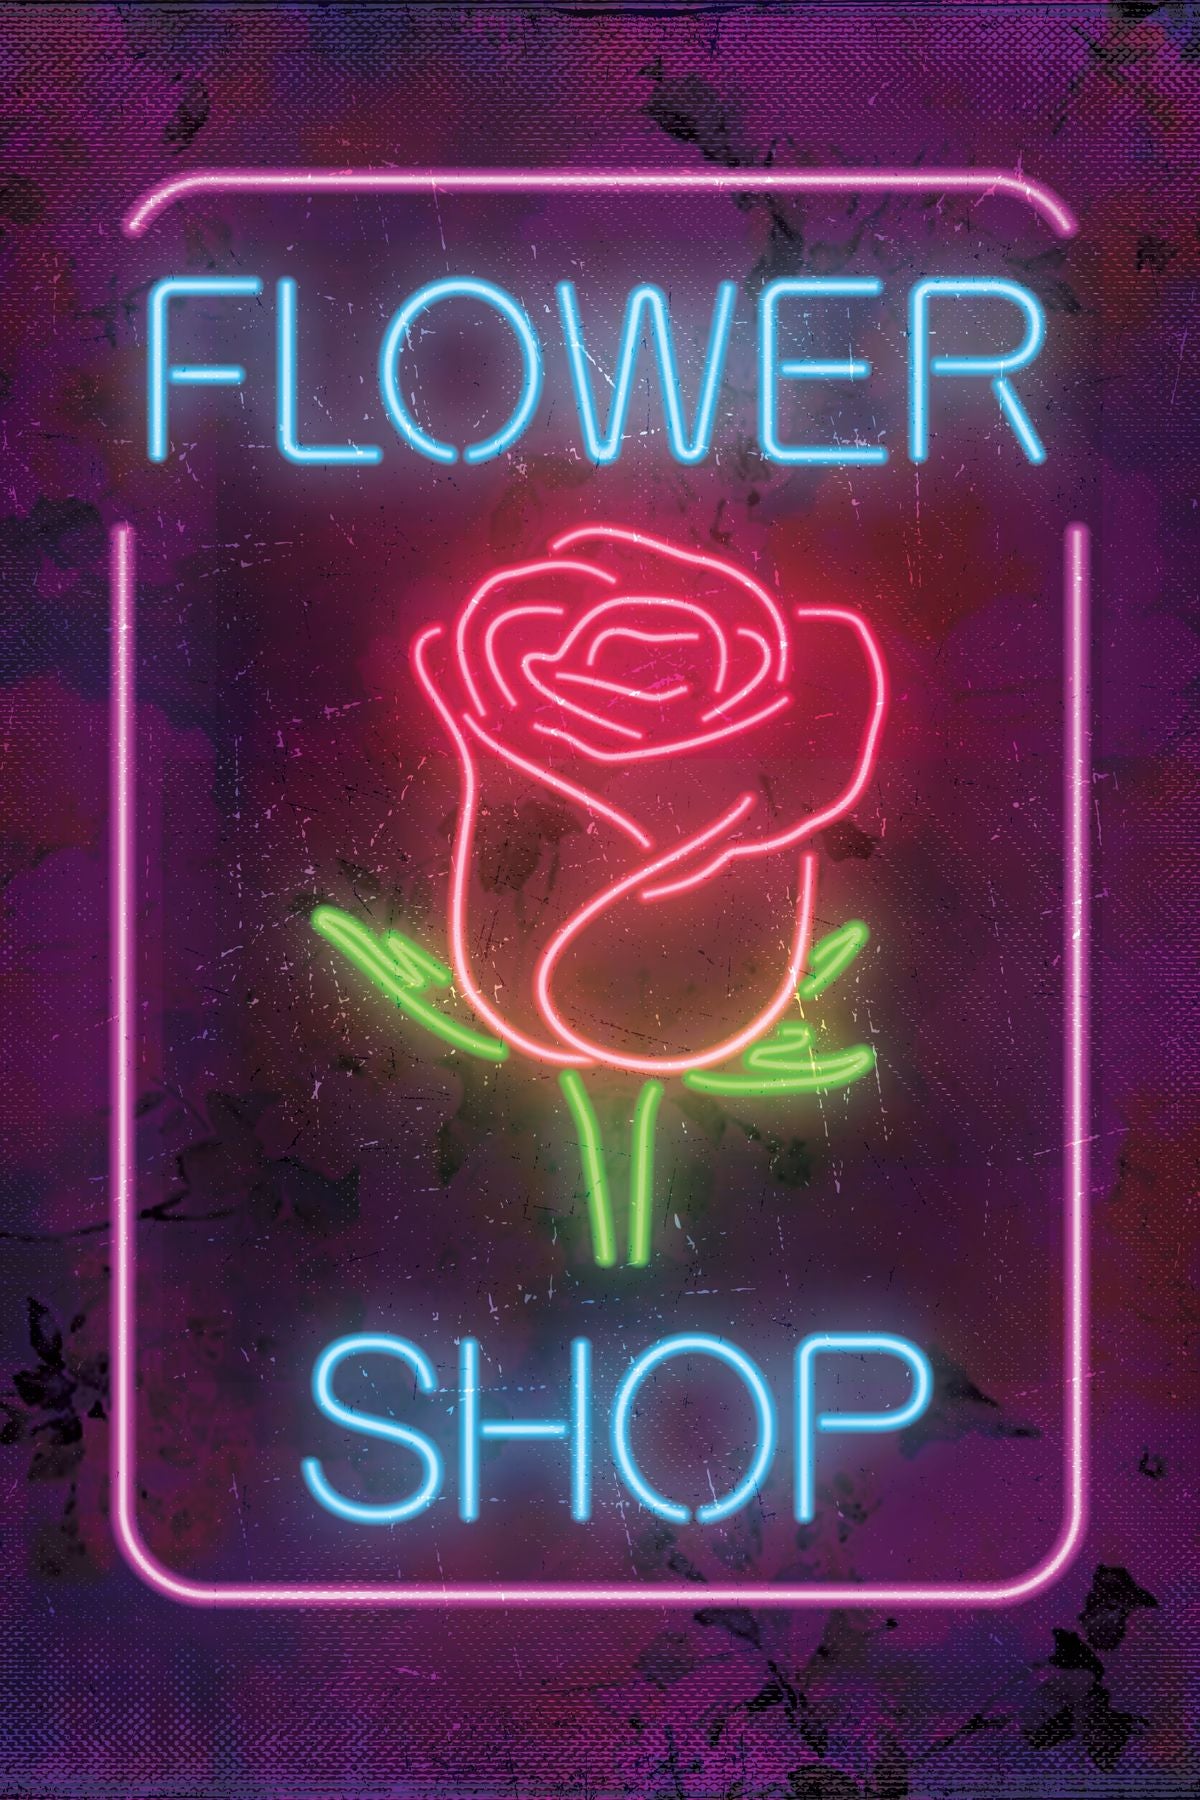 Rose Flower Signage